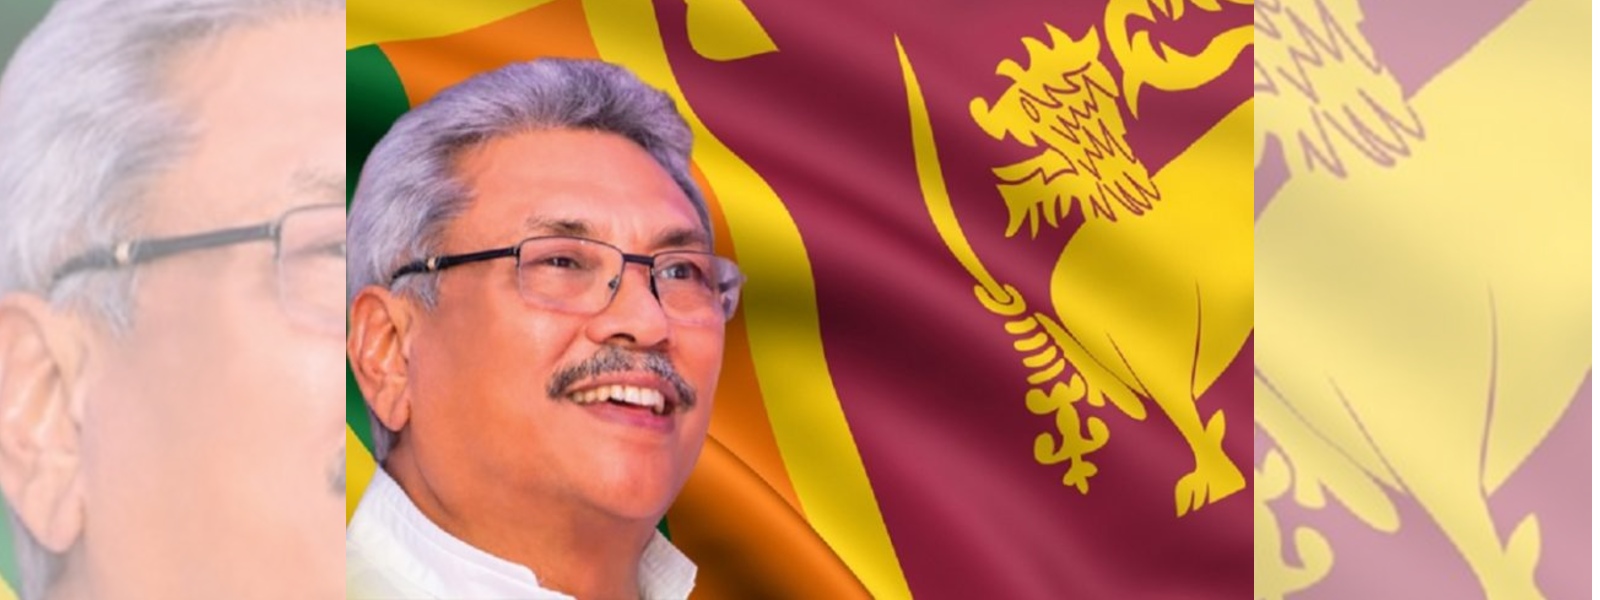 President Gotabaya Rajapaksa calls on people to oppose corruption